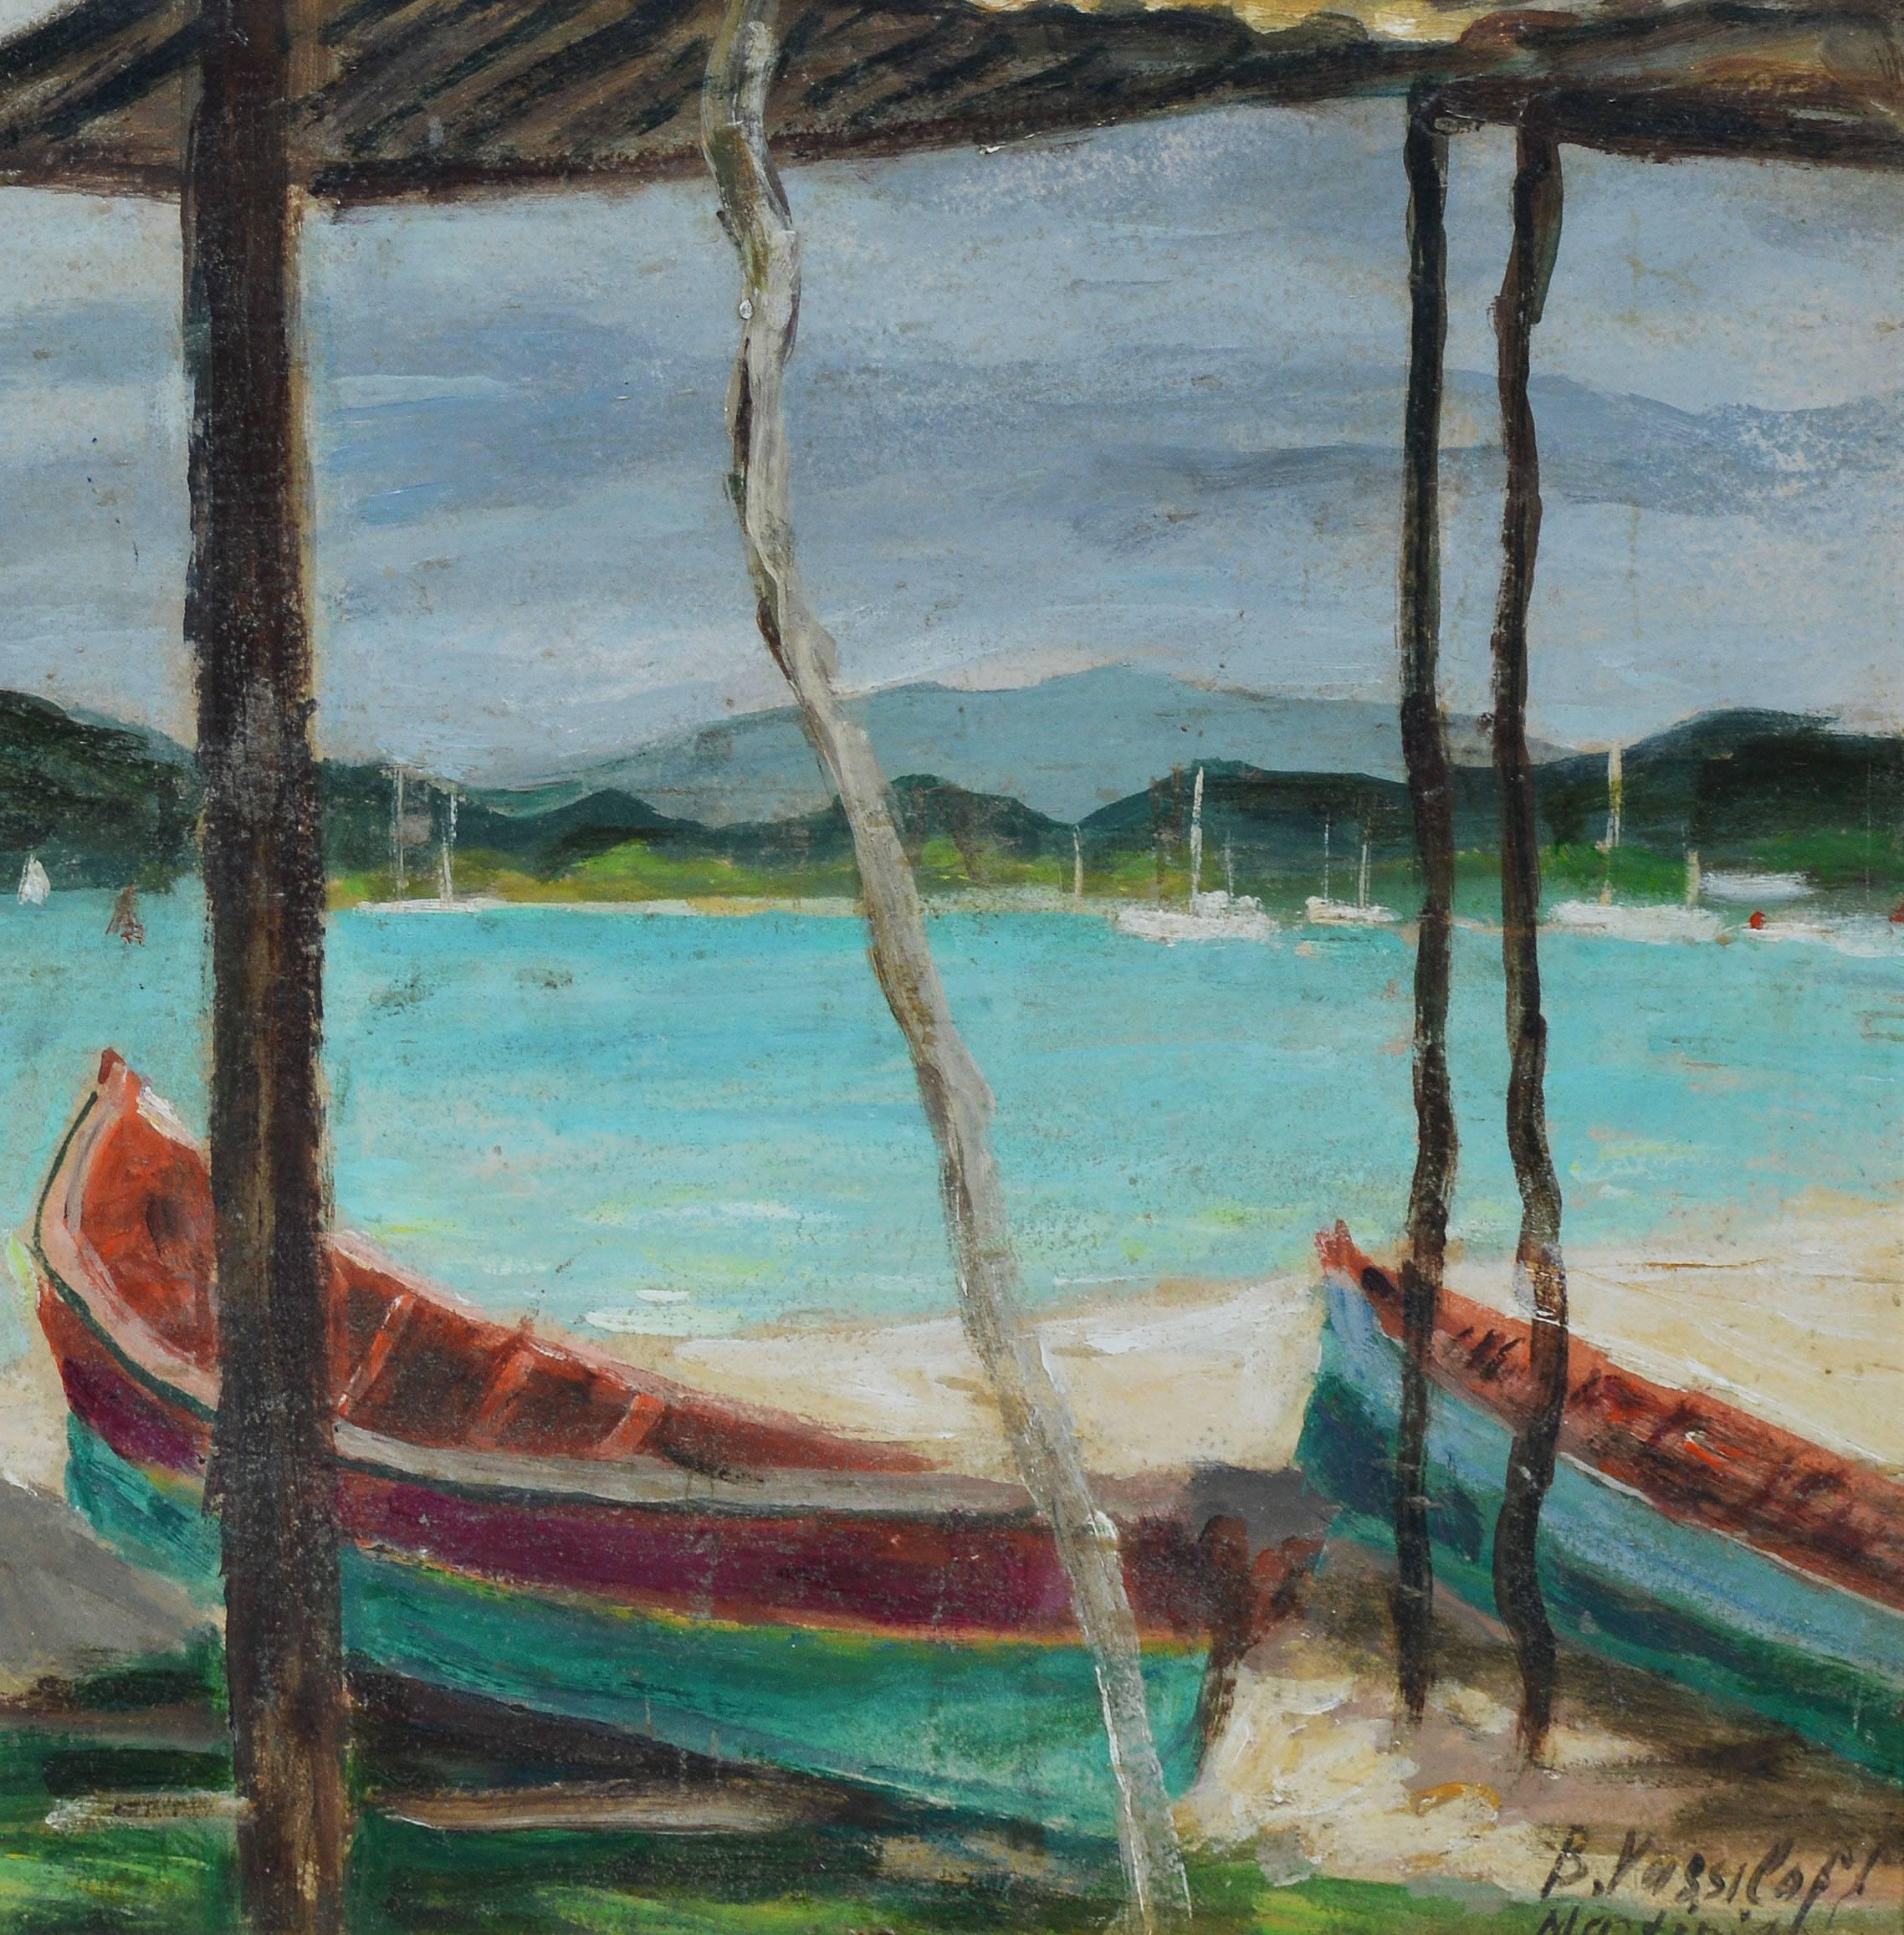 Martinique Beach Scene - Gray Landscape Painting by Boris Vassiloff